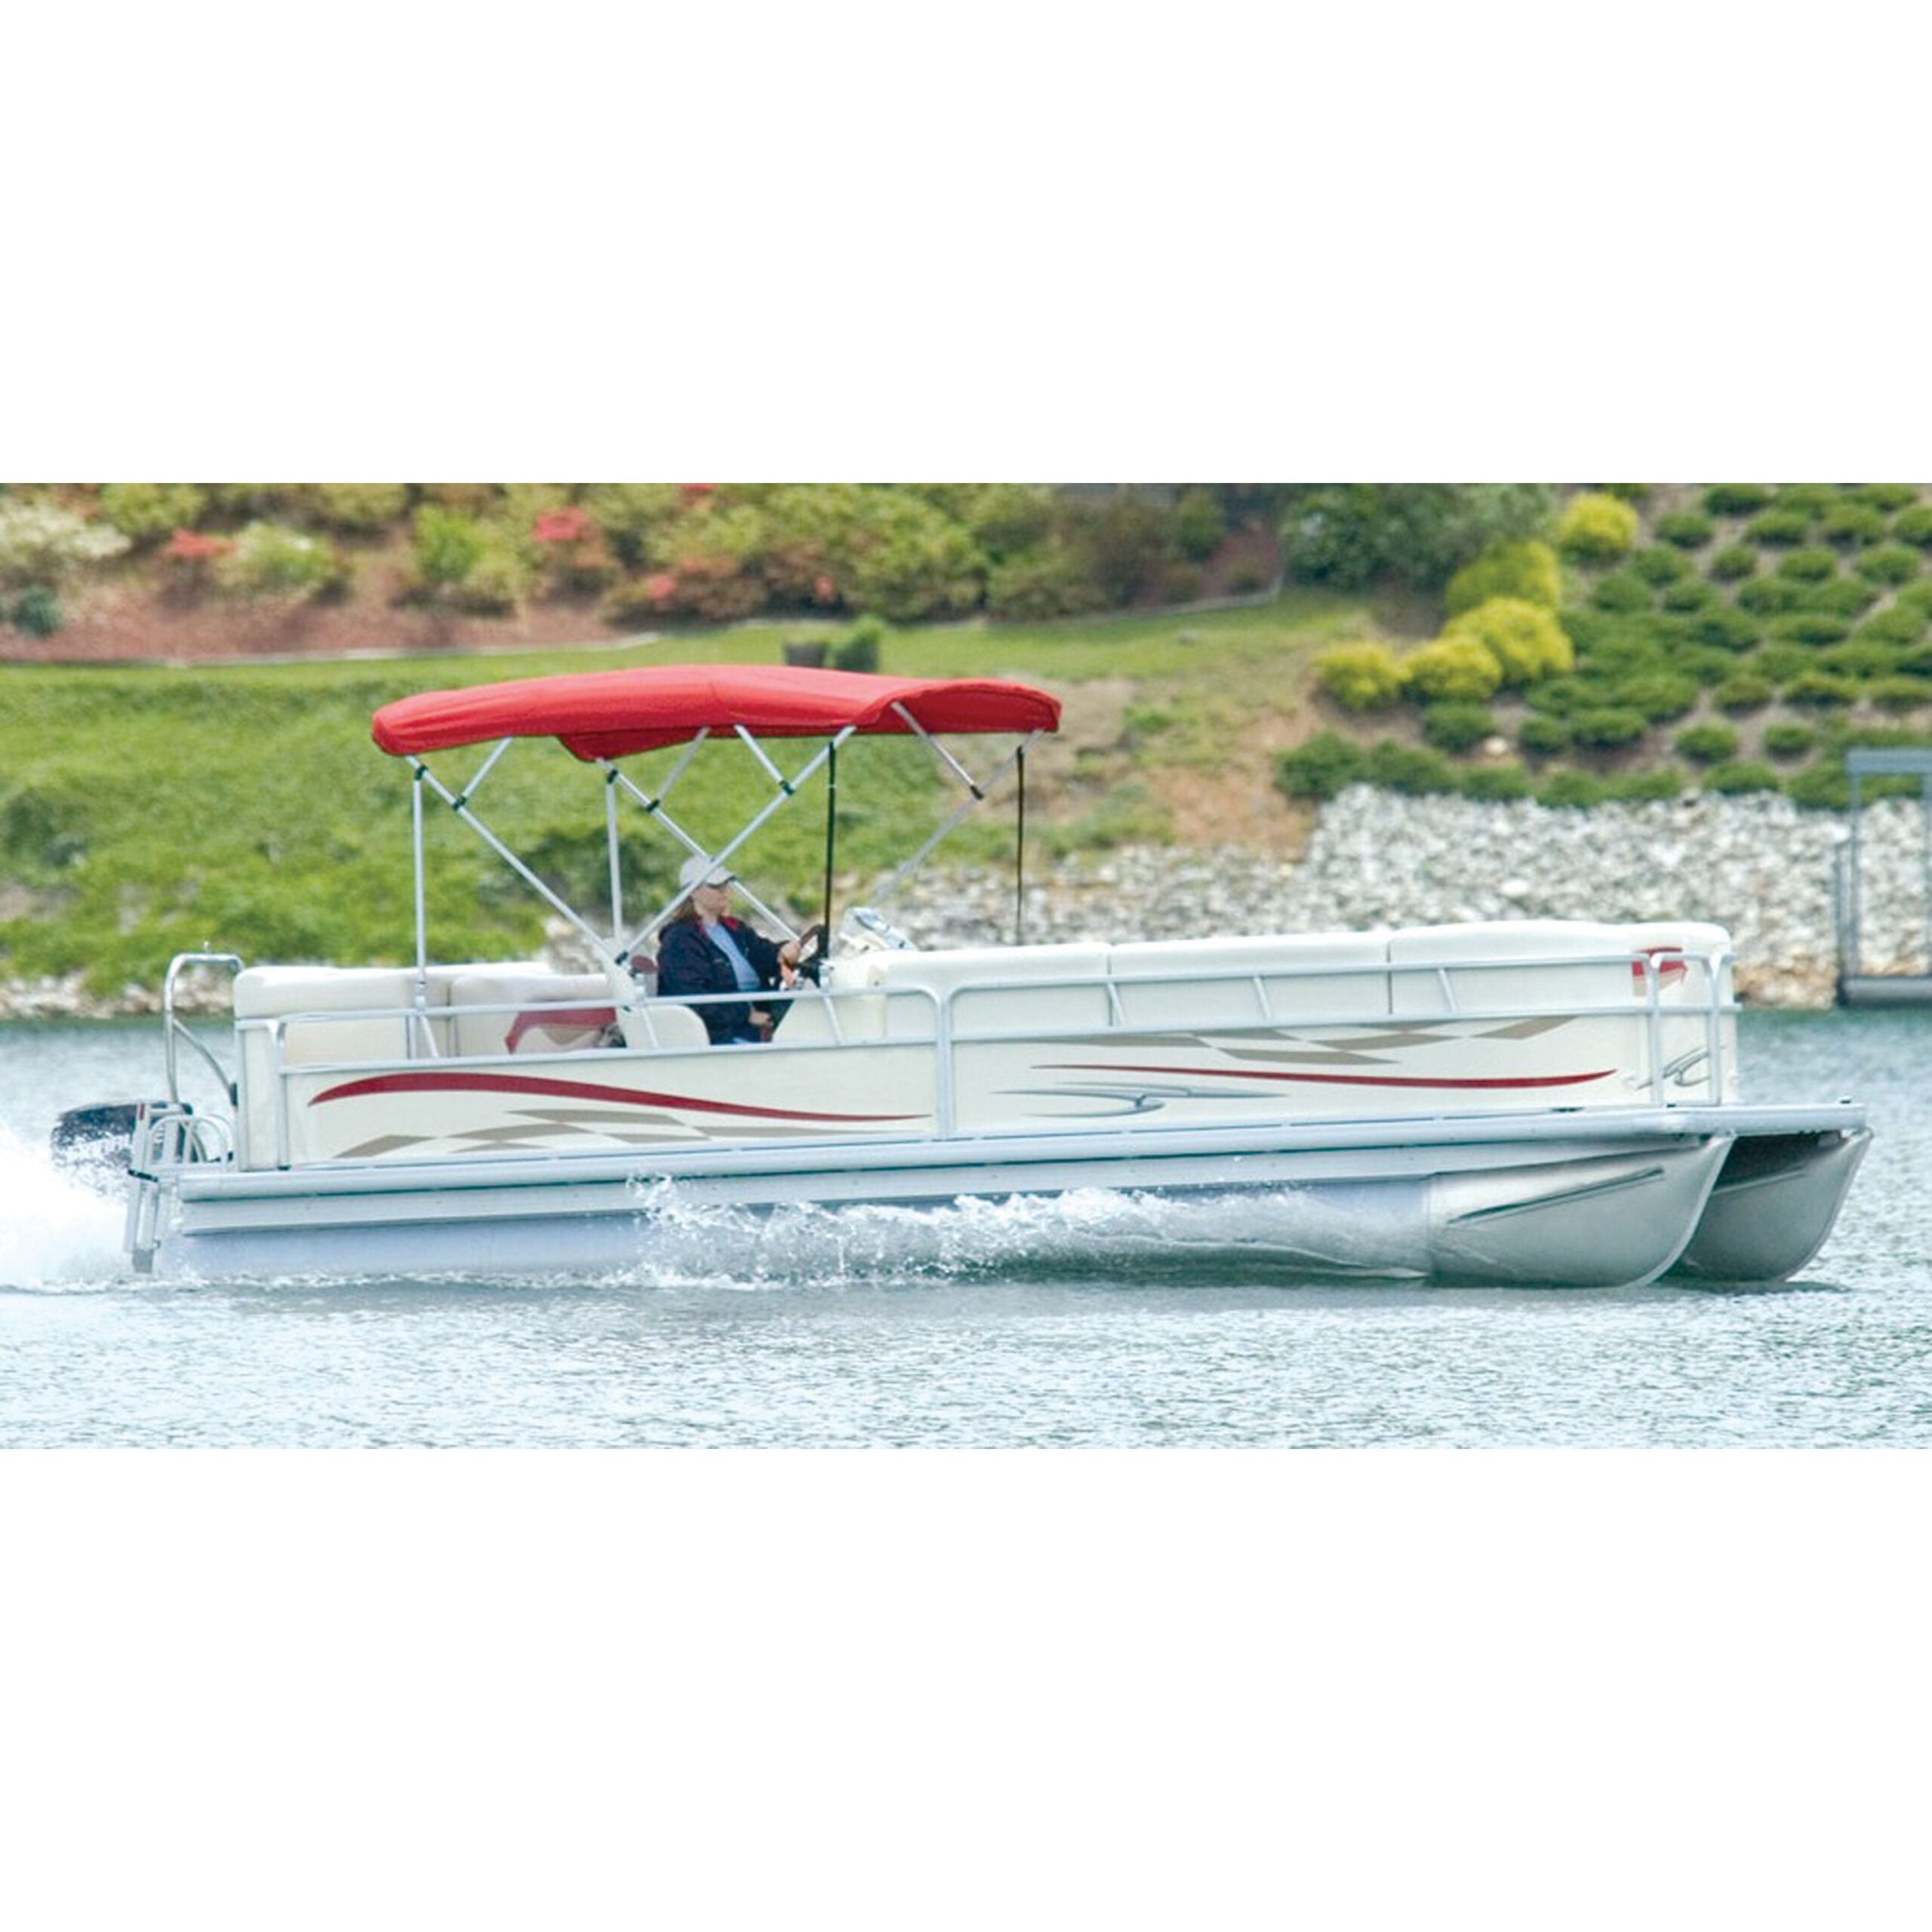 Bimini Tops - Sunbrella Bimini Tops for Boats & Pontoons - iboats.com